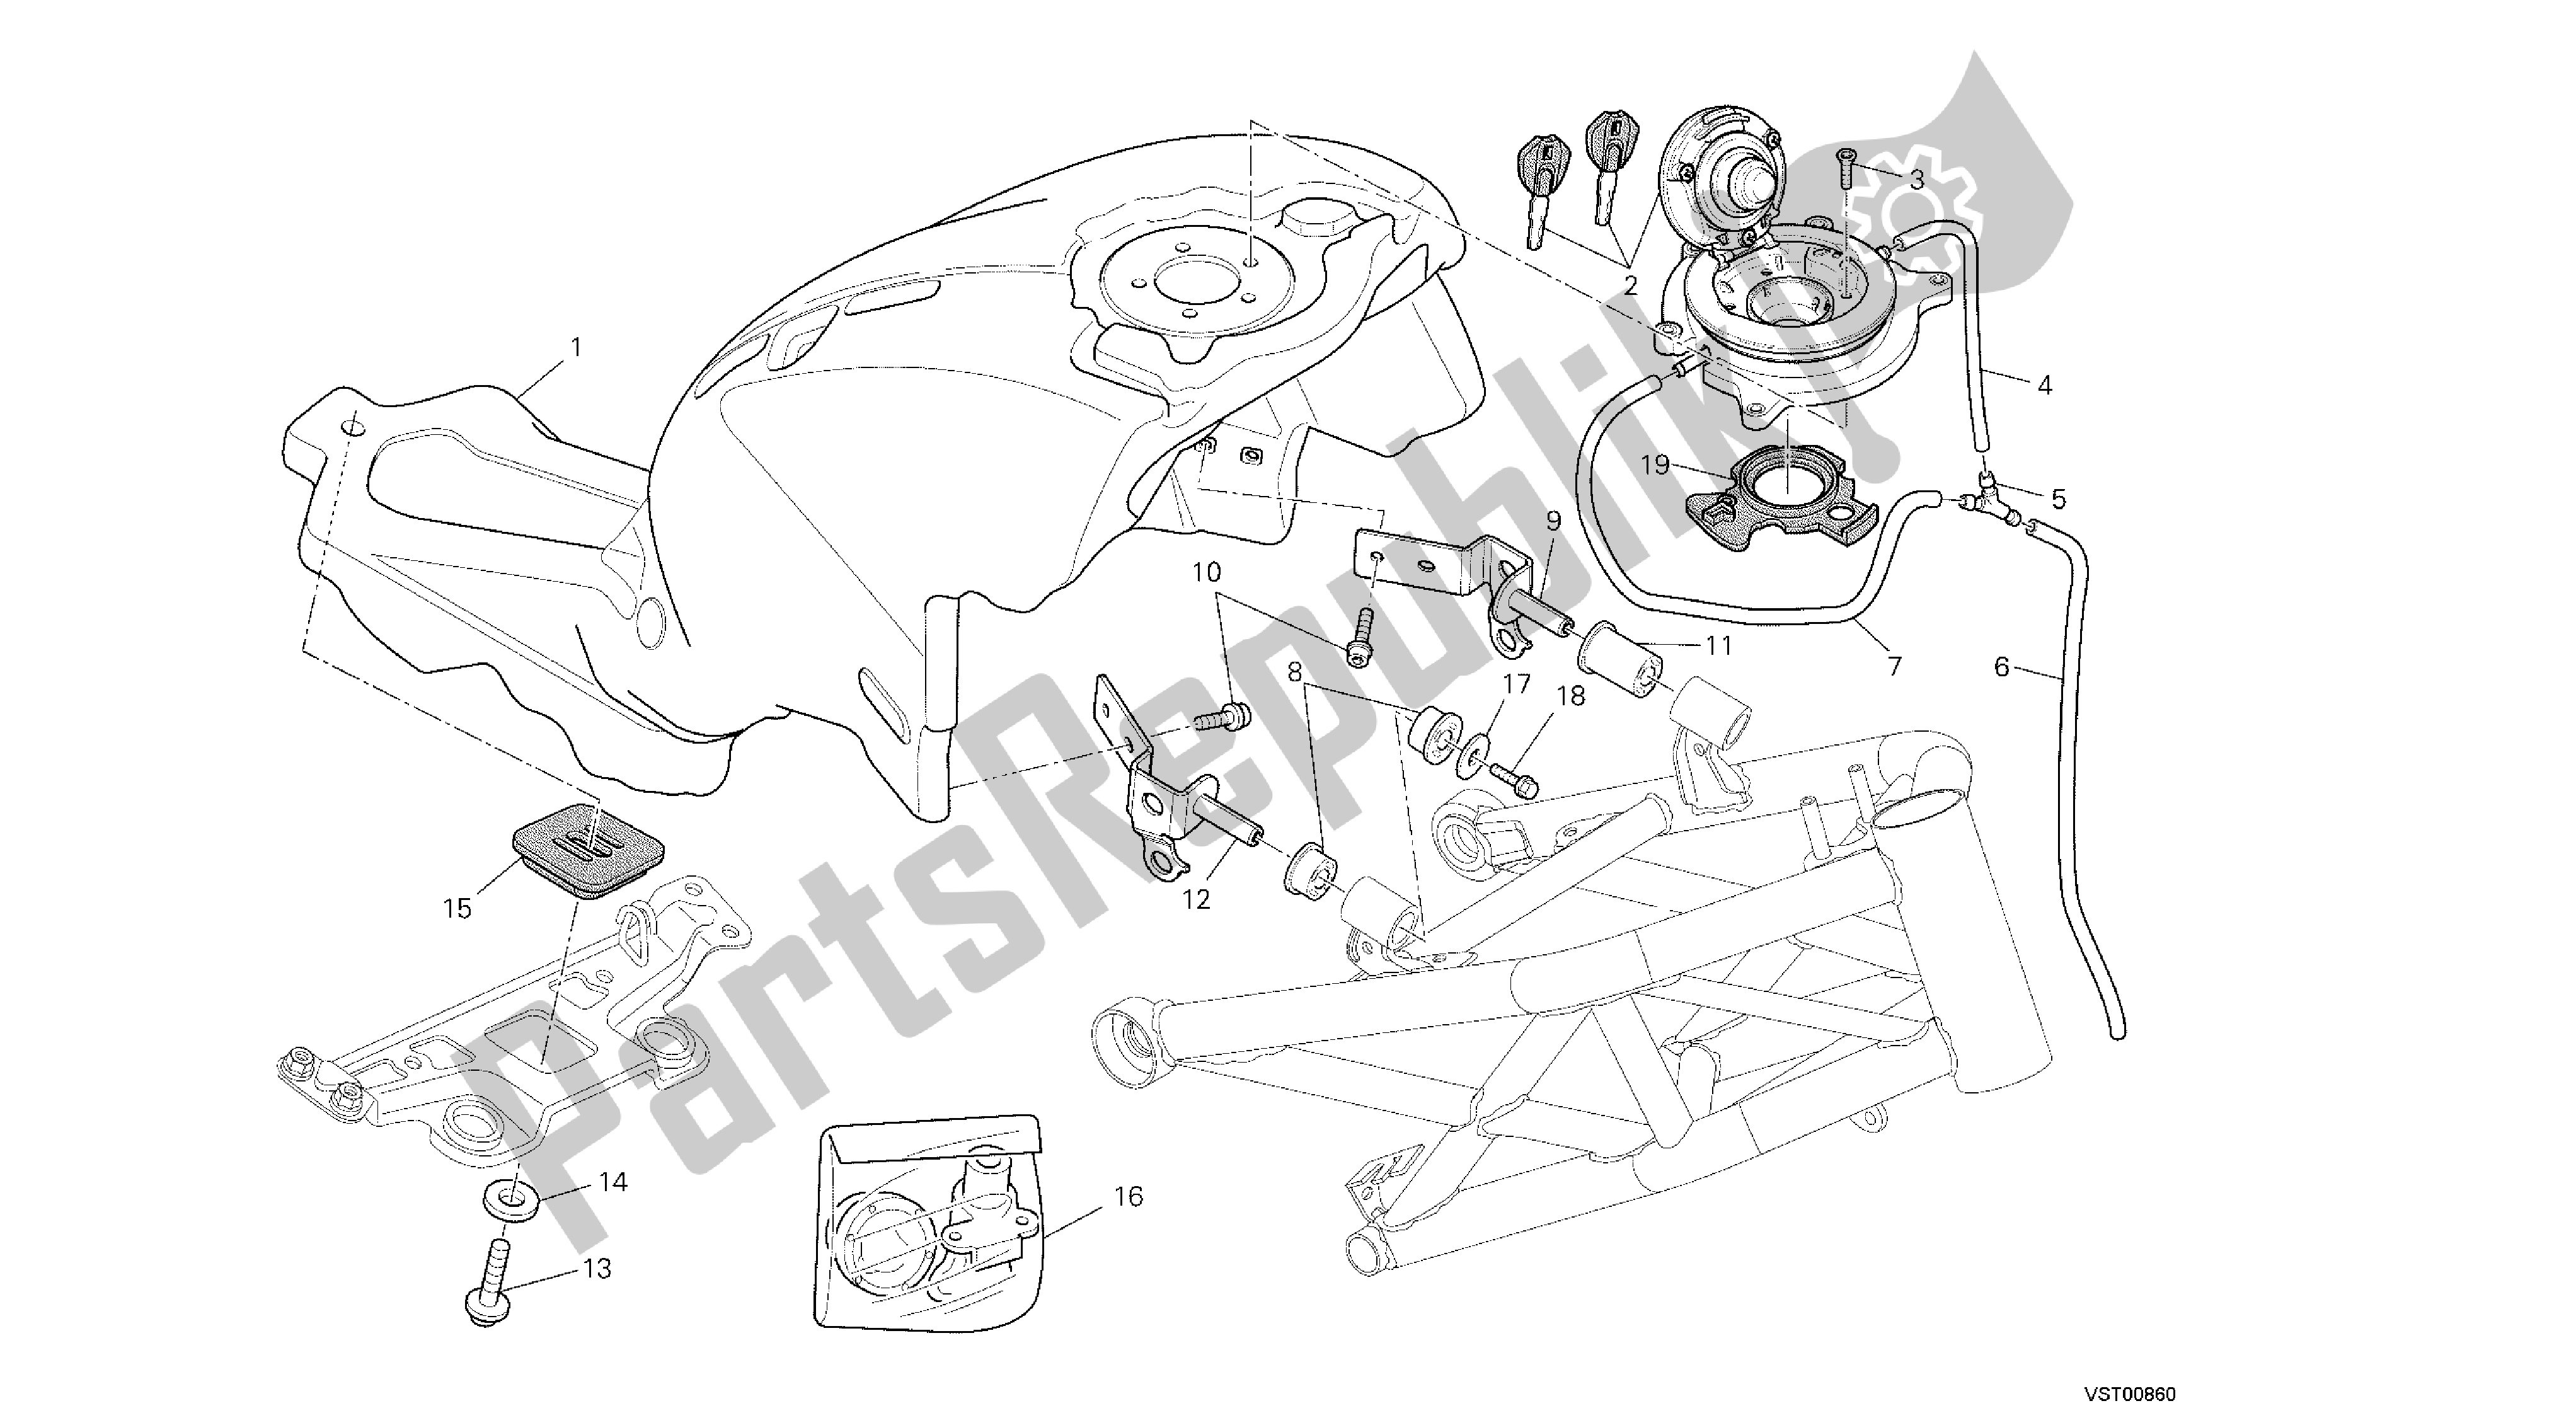 Alle onderdelen voor de Tekening 035 - Brandstoftank [mod: M796 Abs; Xst: Aus, Bra, Eur, Jap] Groepsframe van de Ducati Monster ABS 796 2014